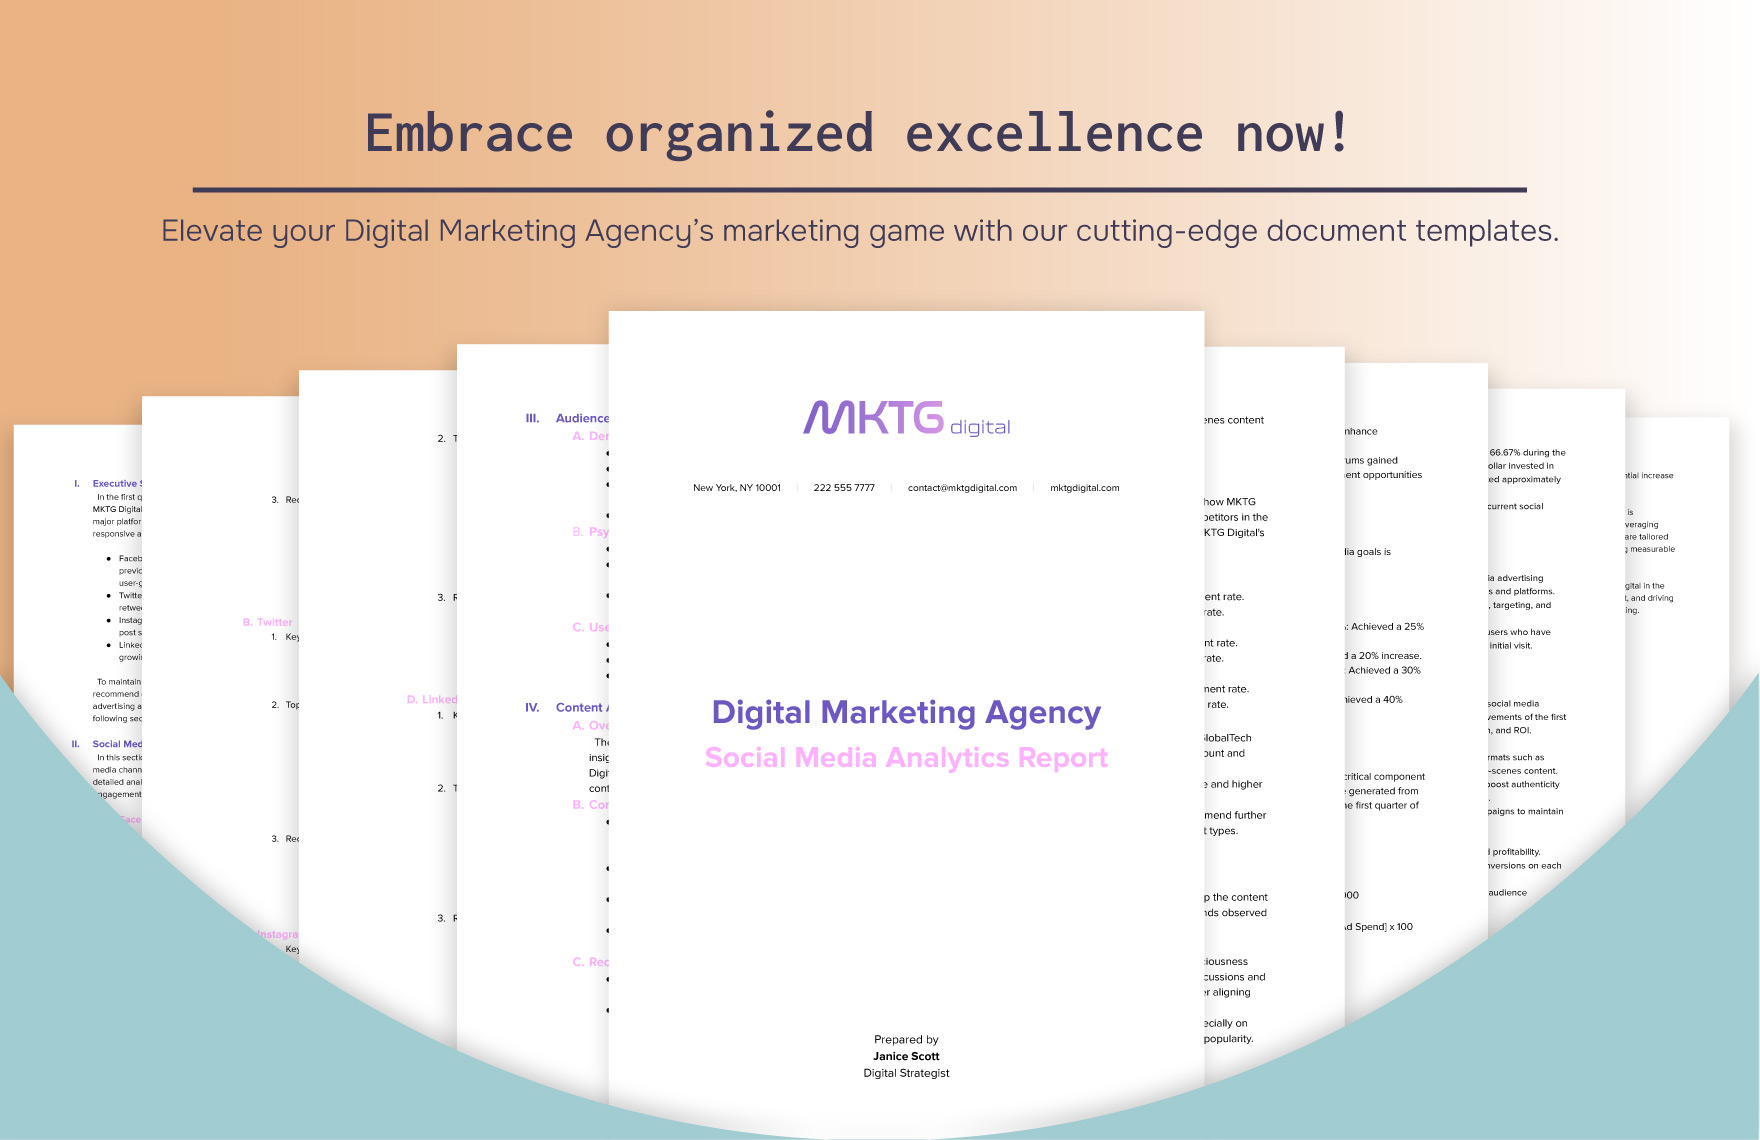 Digital Marketing Agency Social Media Analytics Report Template